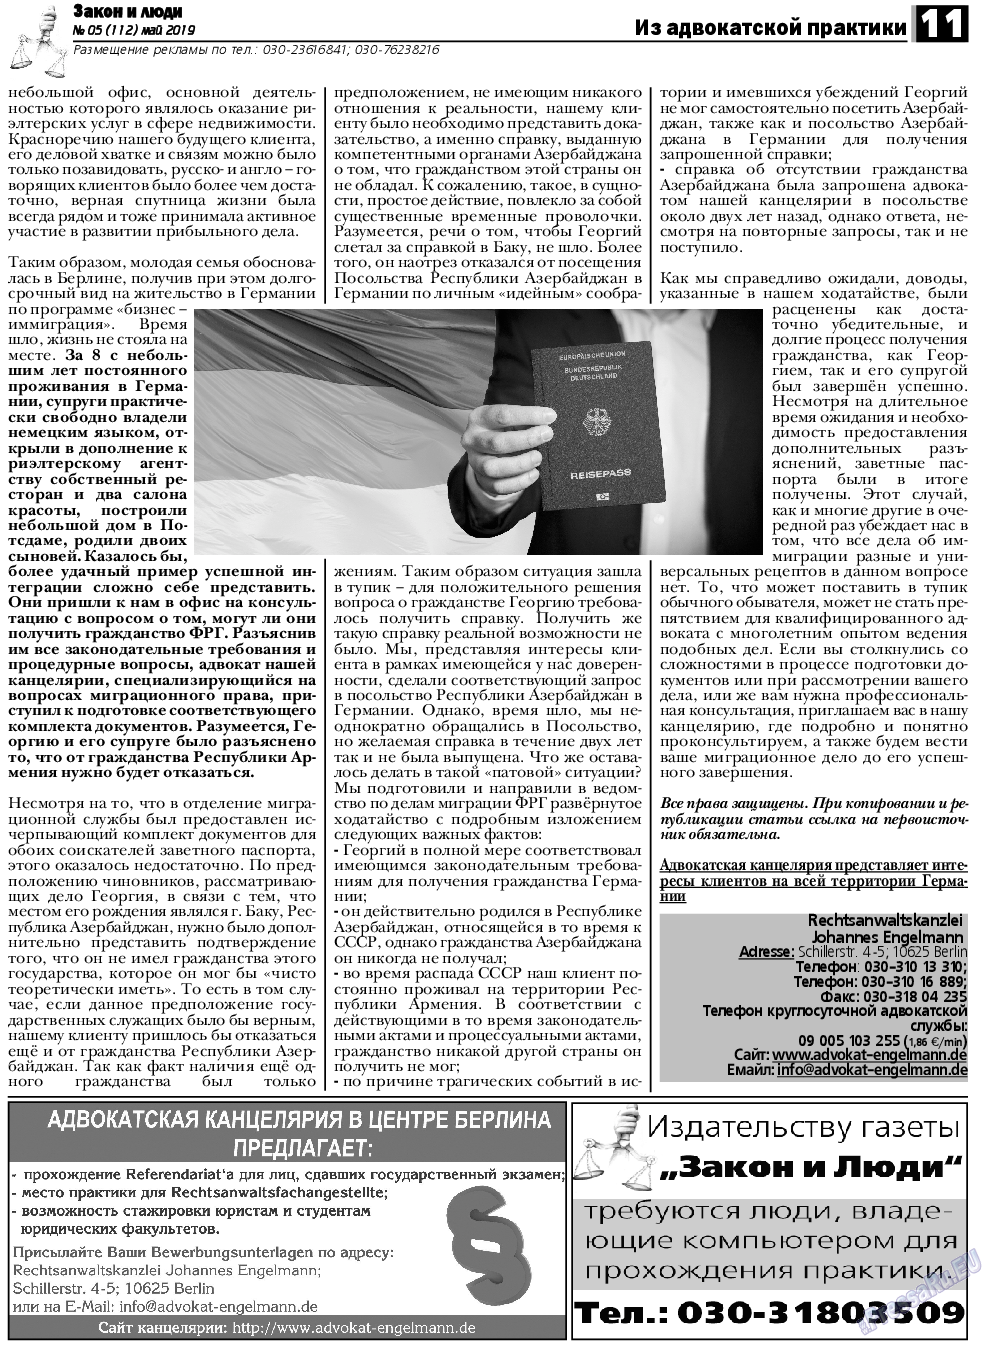 Закон и люди, газета. 2019 №5 стр.11